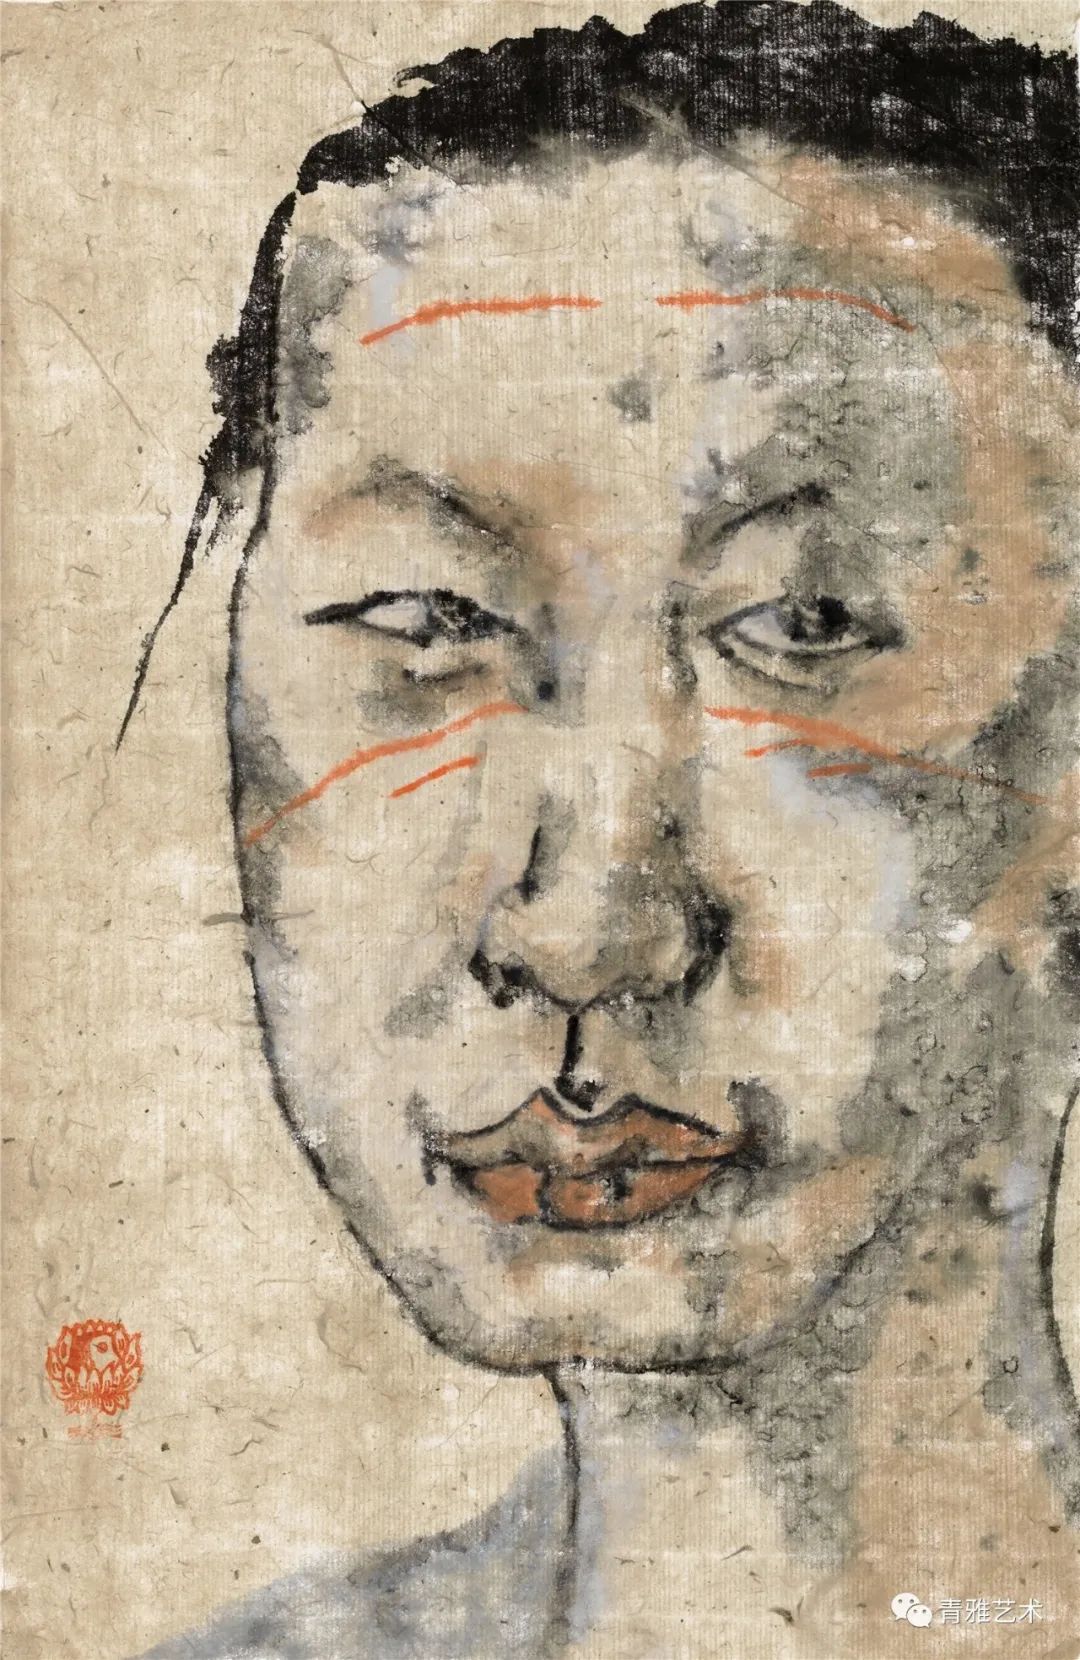 形象鲜活 “独解”内核——著名画家刘佳近作中的写意精神